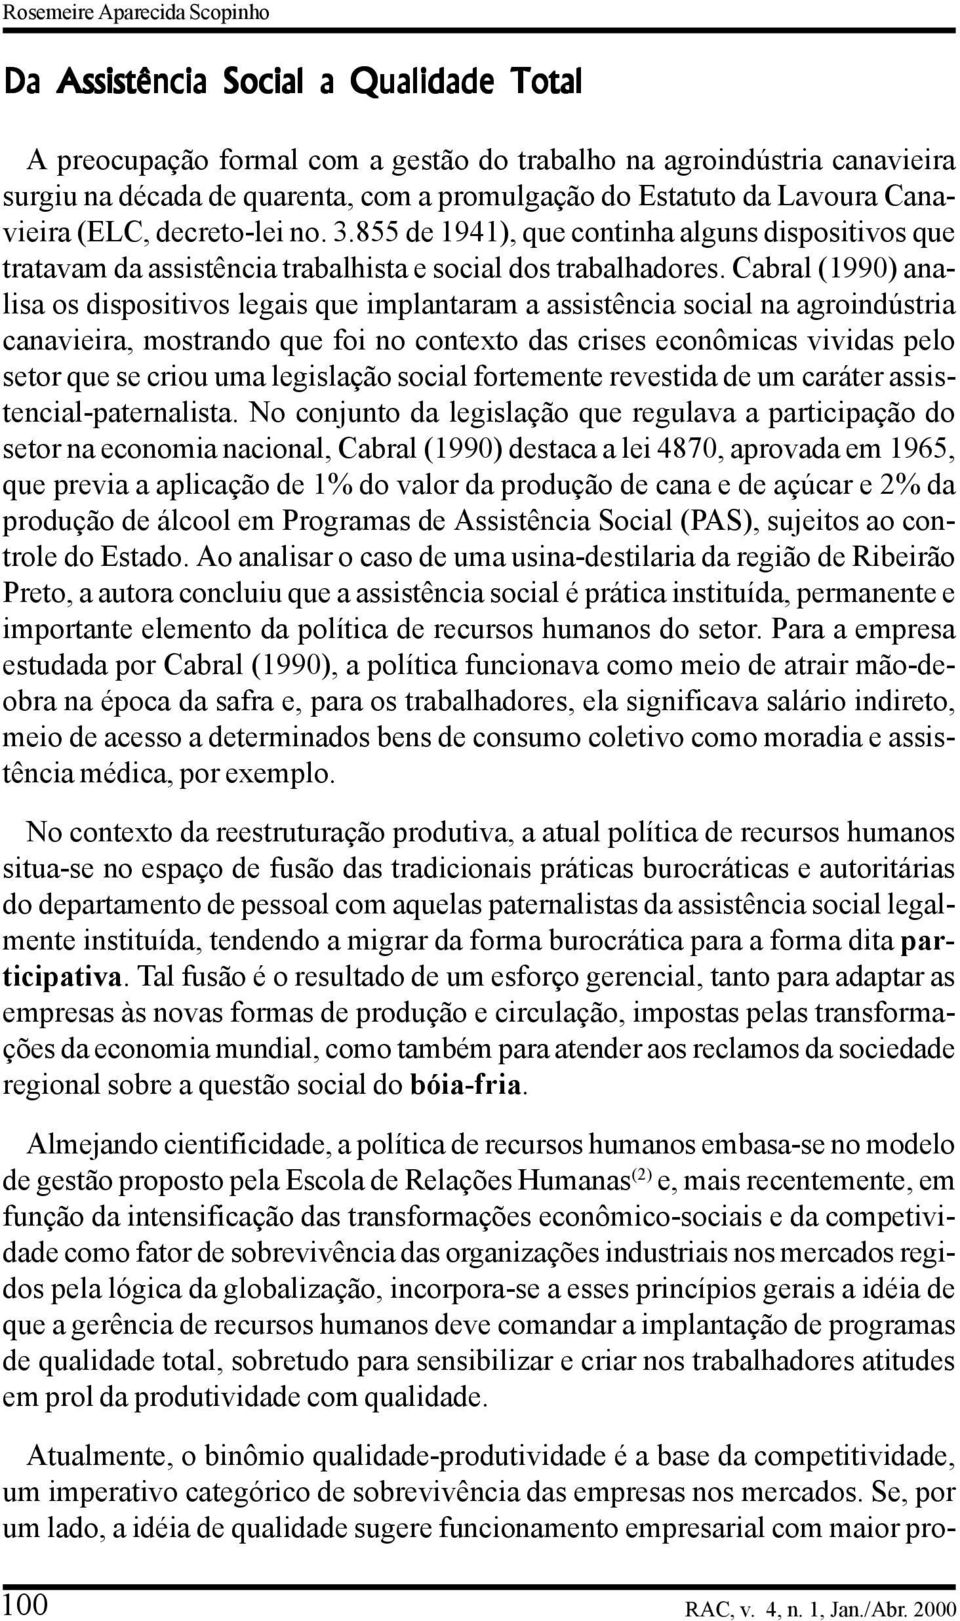 Cabral (1990) analisa os dispositivos legais que implantaram a assistência social na agroindústria canavieira, mostrando que foi no contexto das crises econômicas vividas pelo setor que se criou uma